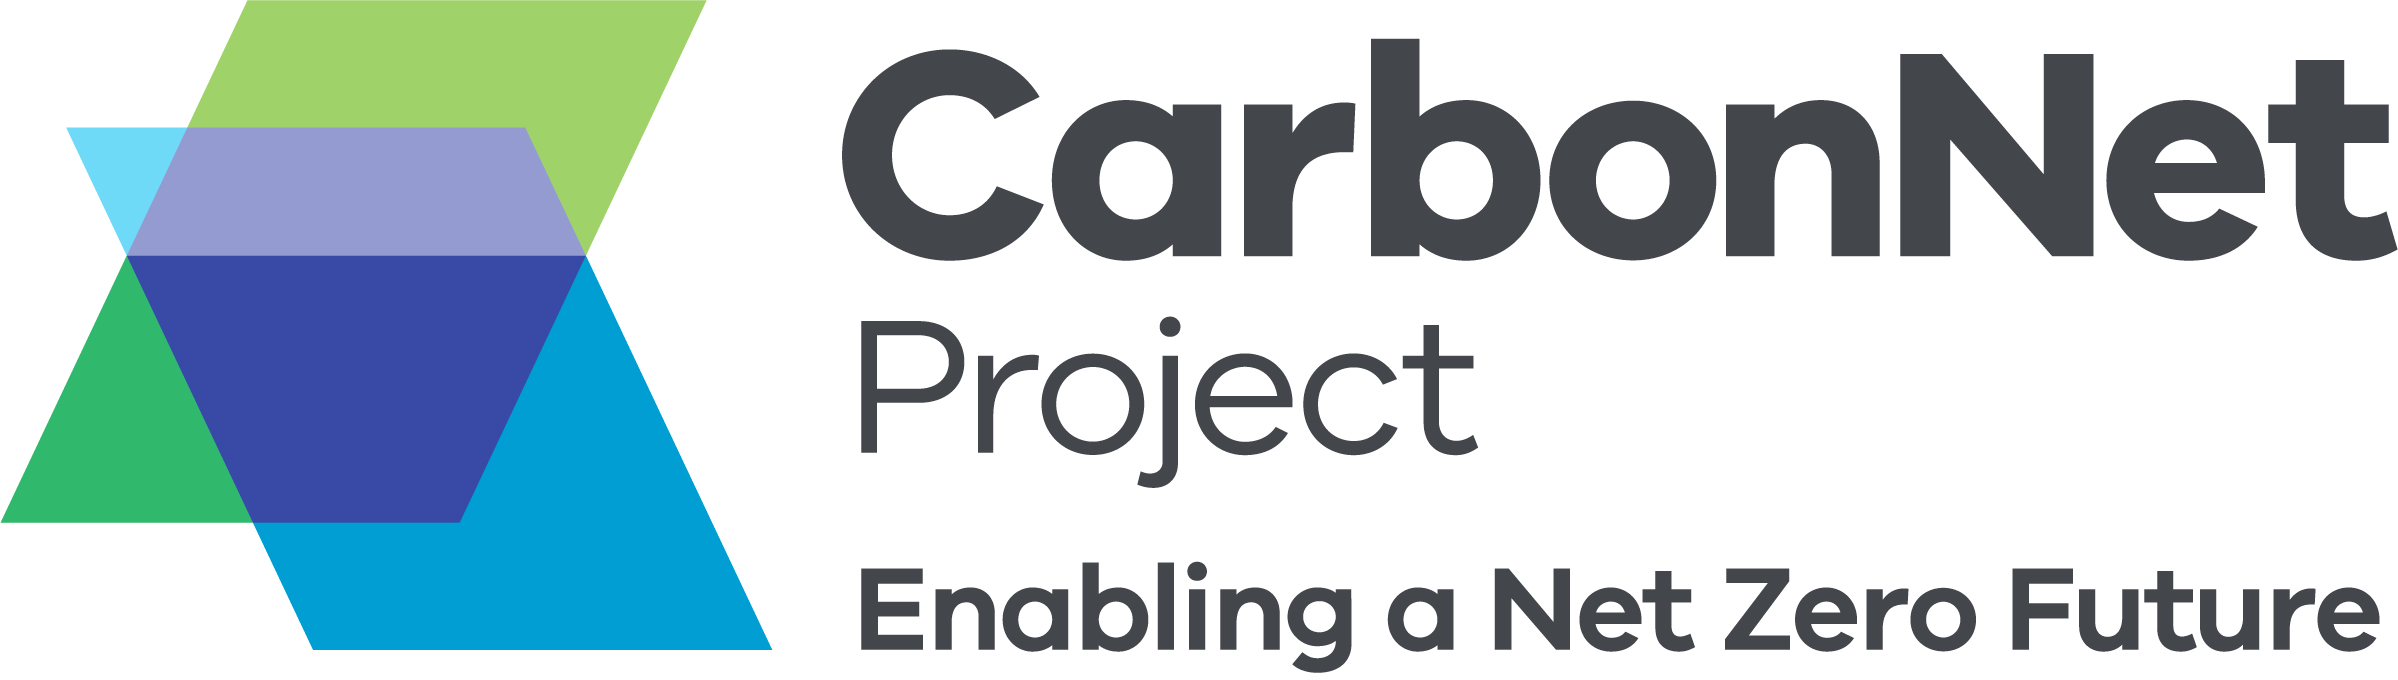 CarbonNet Logo+Tagline_CMYK_FULL COLOUR